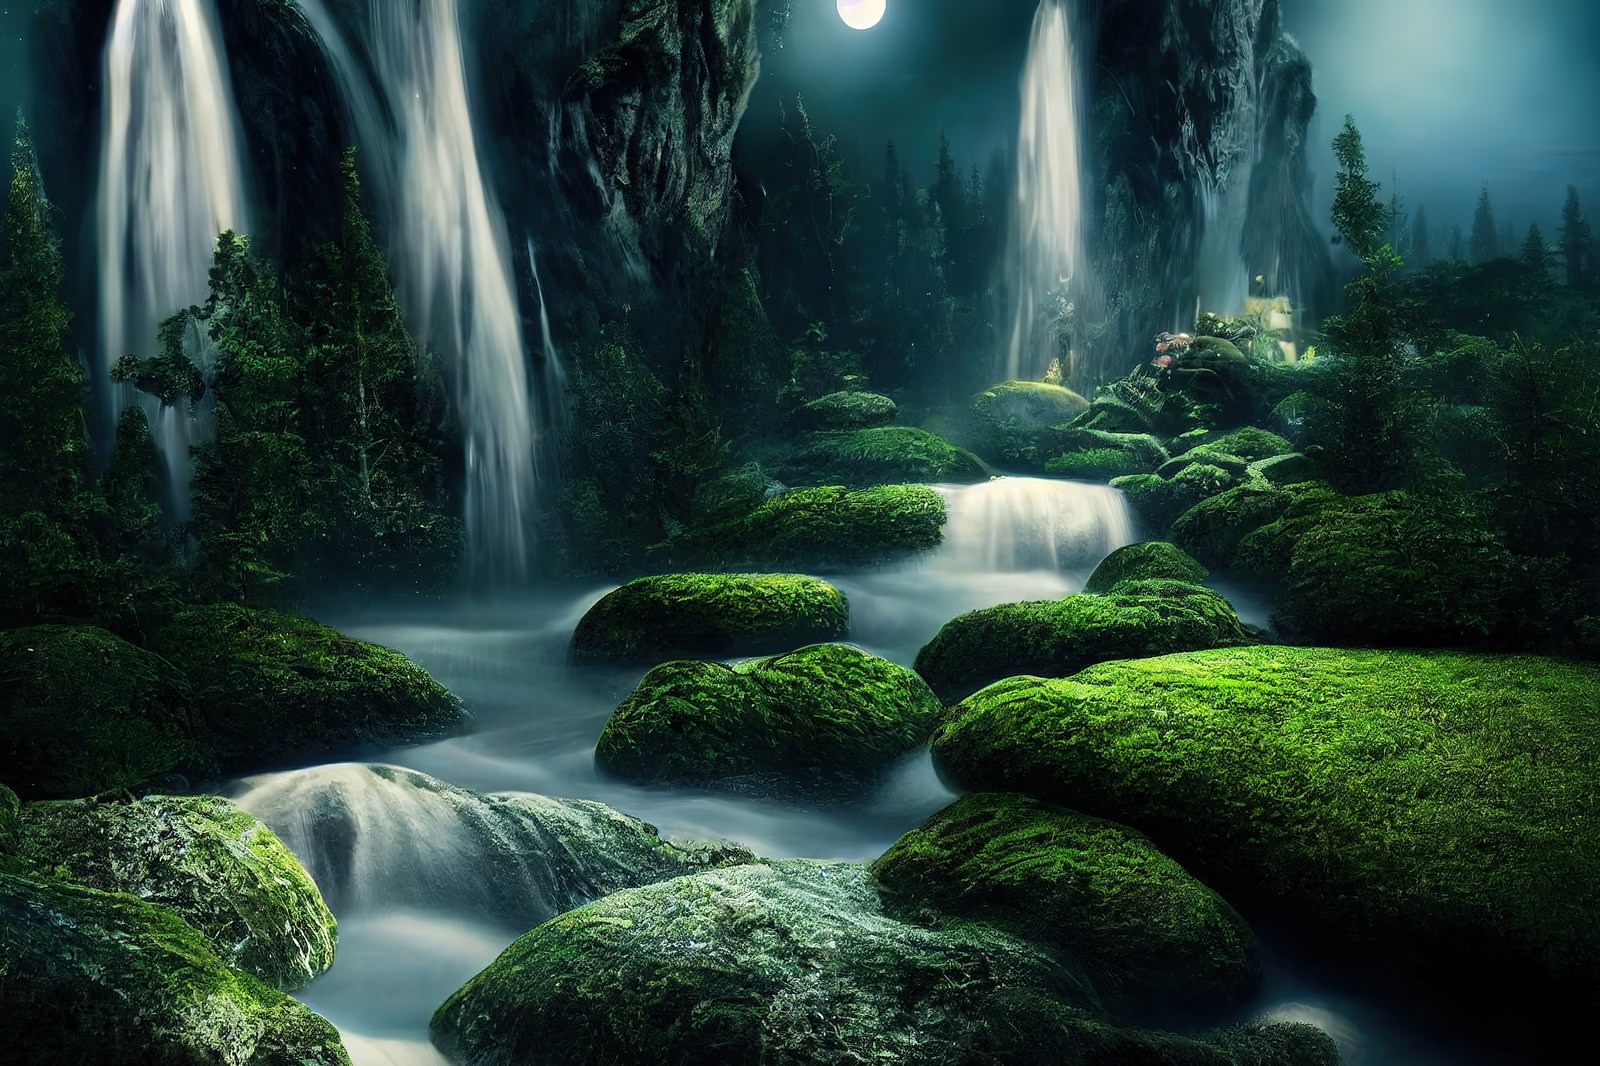 「夜の渓流と苔生す岩肌 | フリー素材のぱくたそ」の写真